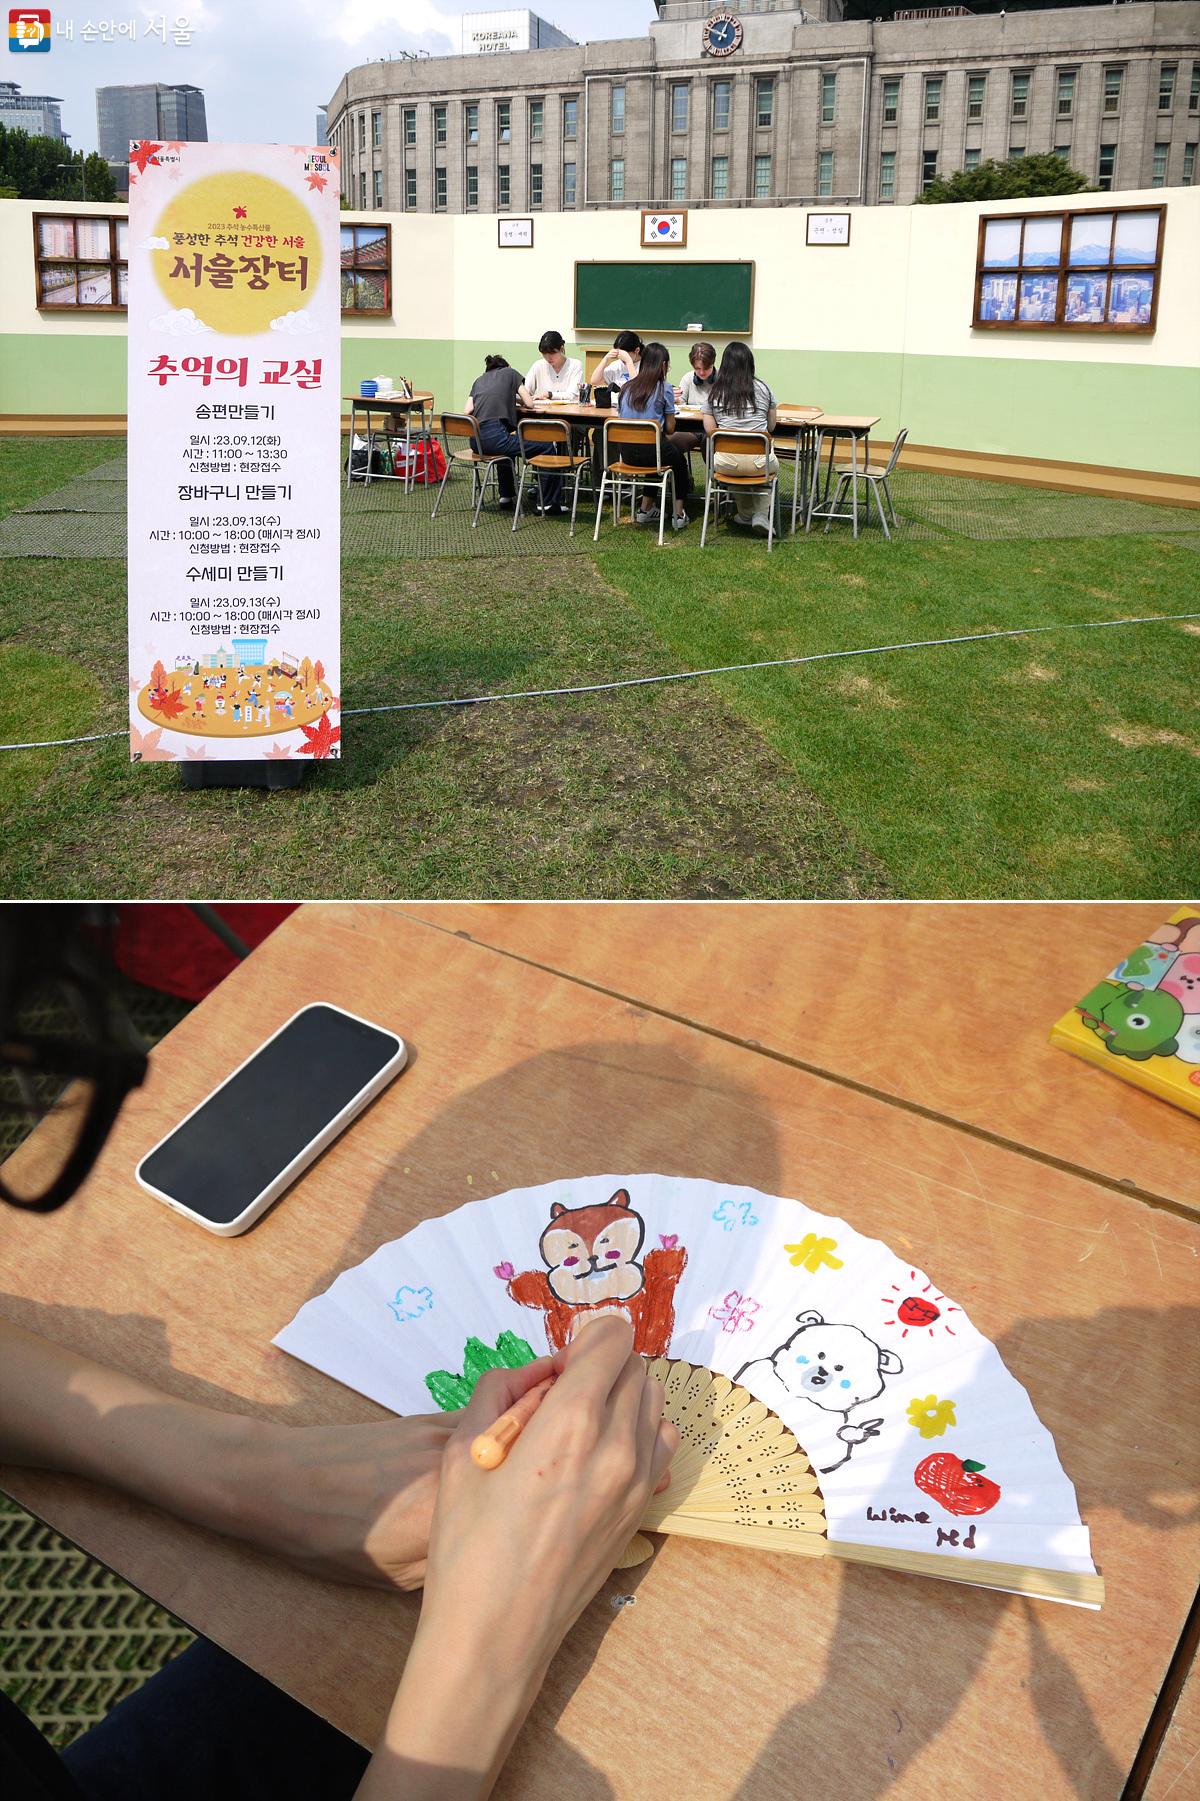 서울광장 중앙에 마련된 추억의 교실에서 시민들이 부채에 그림을 그리고 있다. ©최윤영